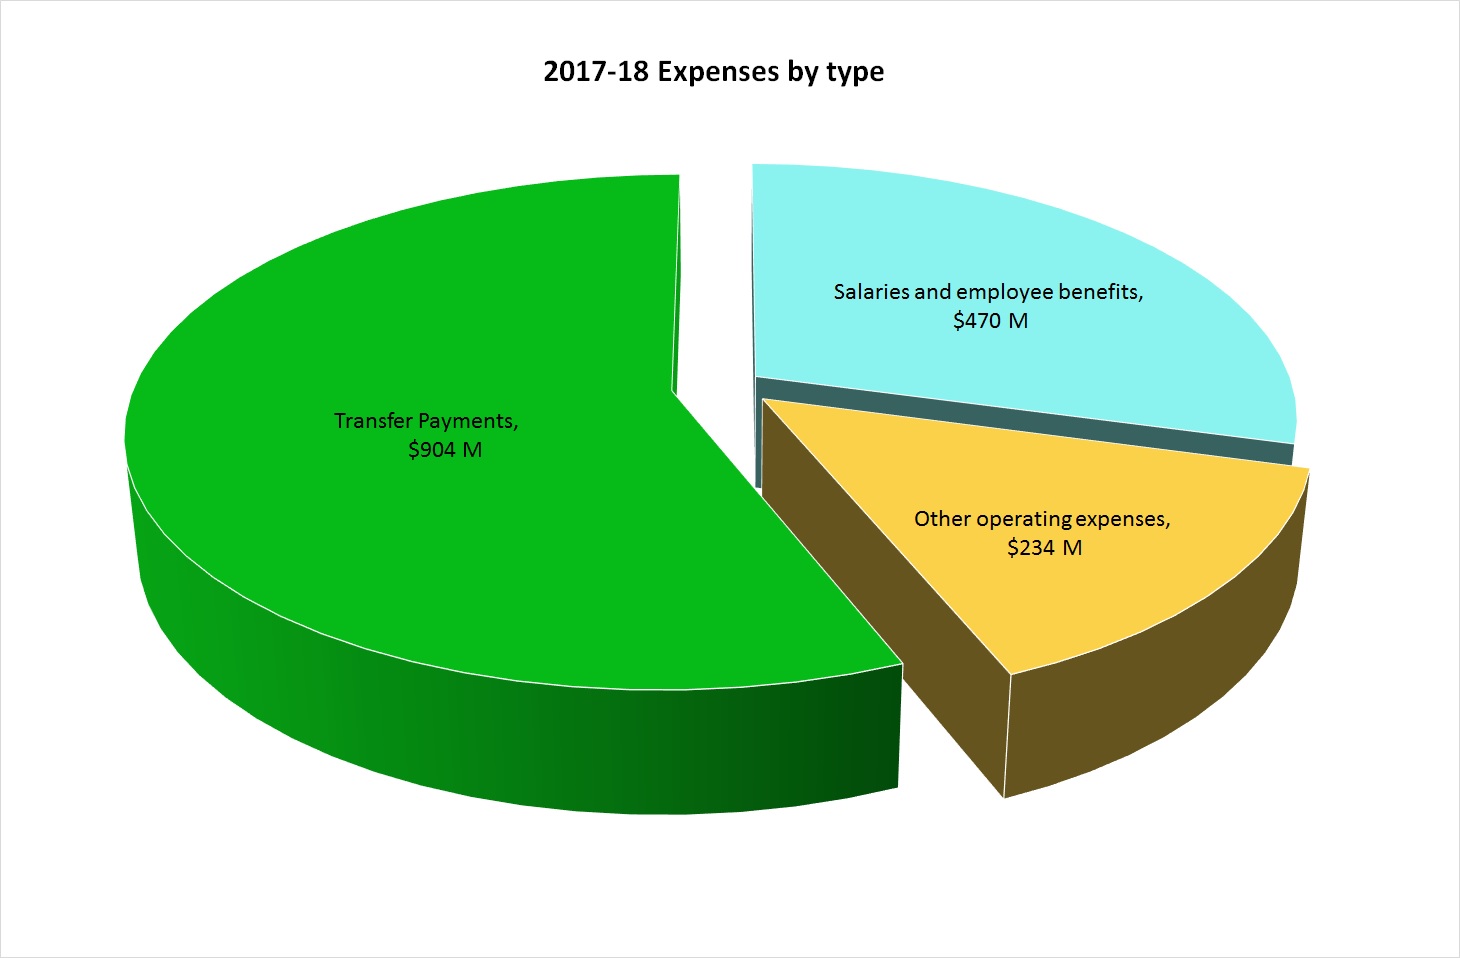 2017-18 Expenses by Type, described below.